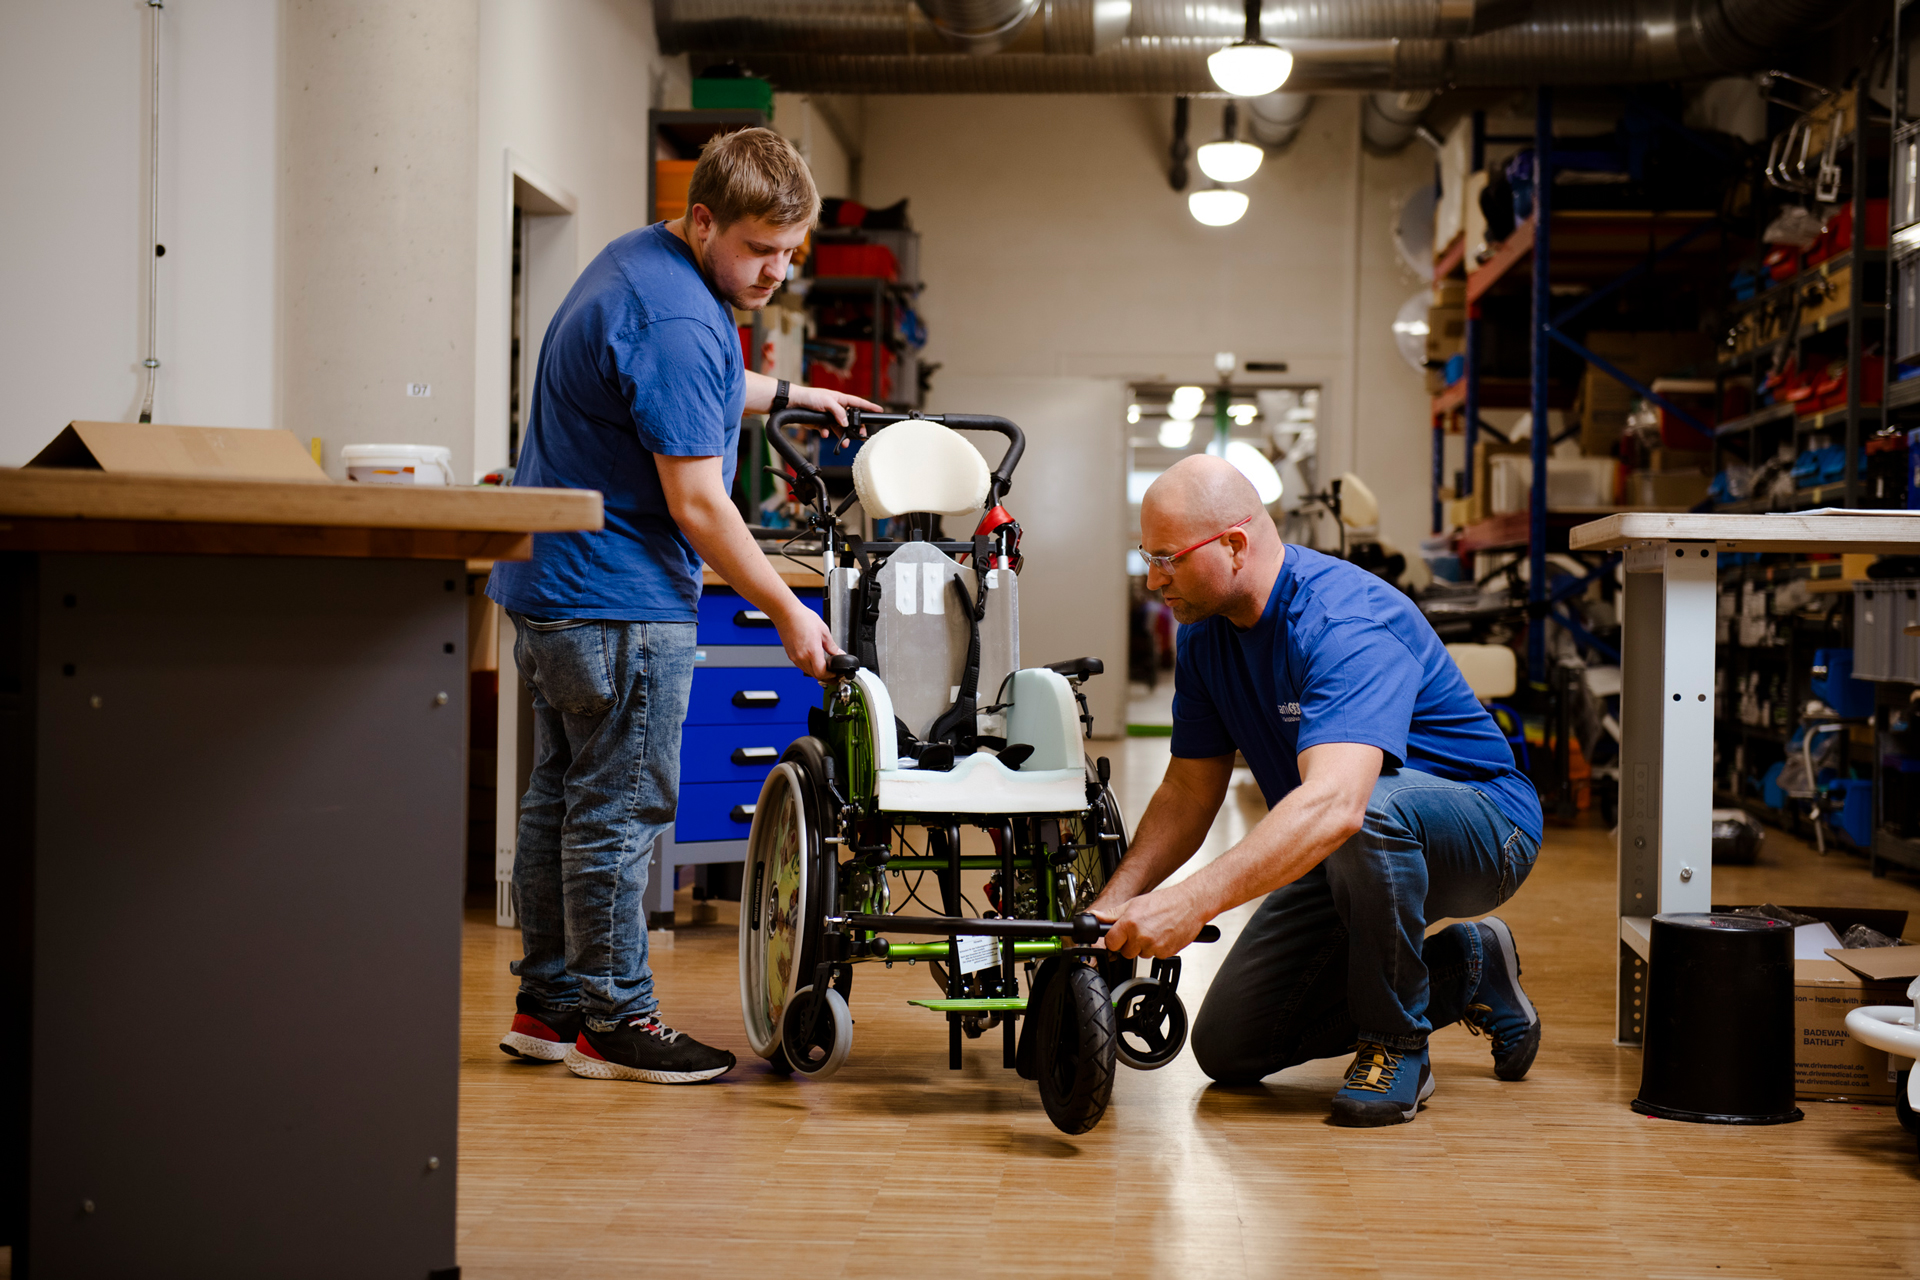 Zwei Männer arbeiten engagiert in einer Werkstatt an einem Rollstuhl, der individuell angefertigt wird. Einer von ihnen kniet nieder, um das Vorderrad anzupassen.